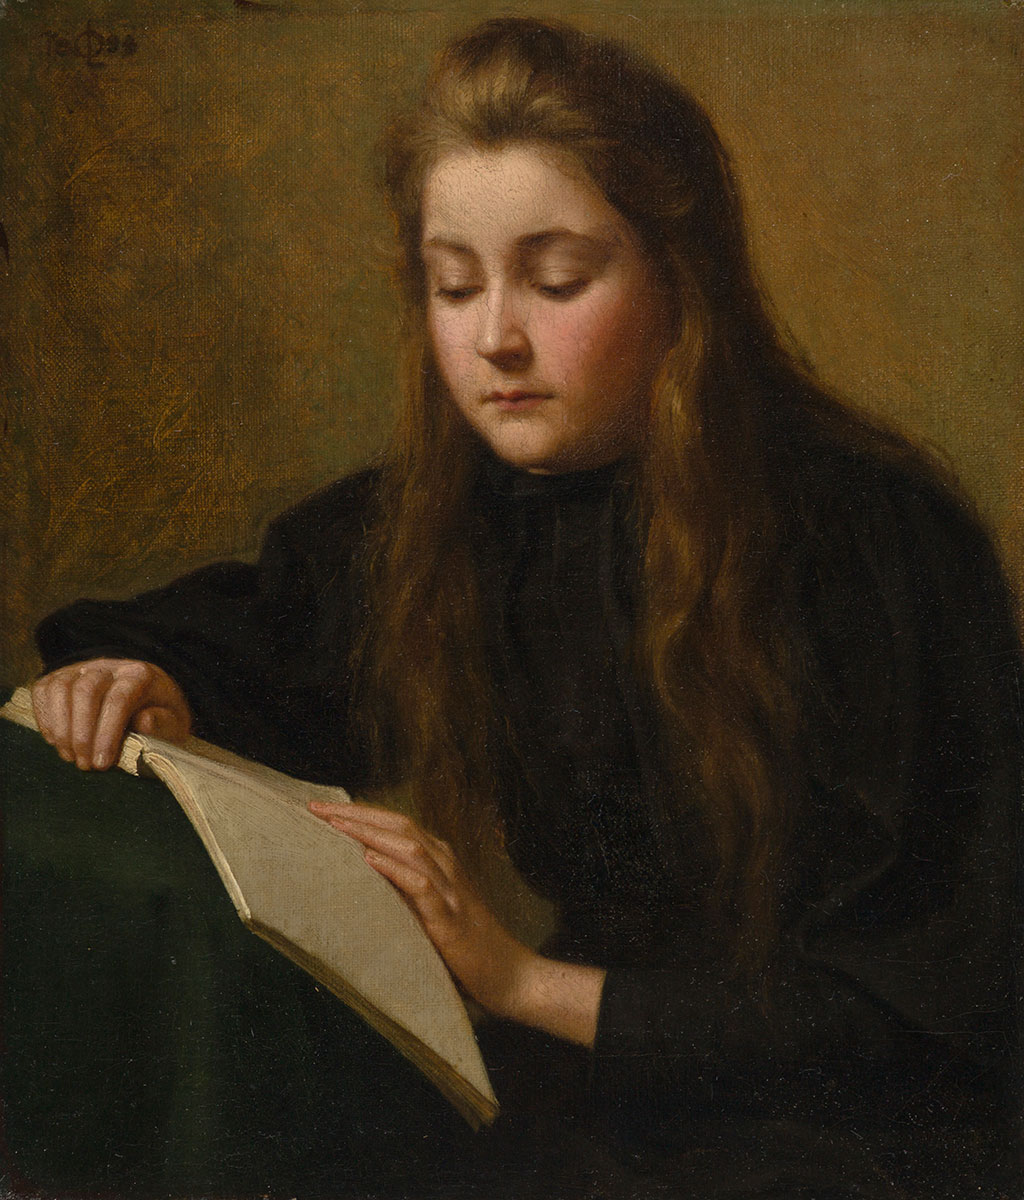 Ozéma Leduc, la sœur de l’artiste, pose pour ce tableau qui fait partie d’une suite d’œuvres montrant des adolescents absorbés par la lecture.